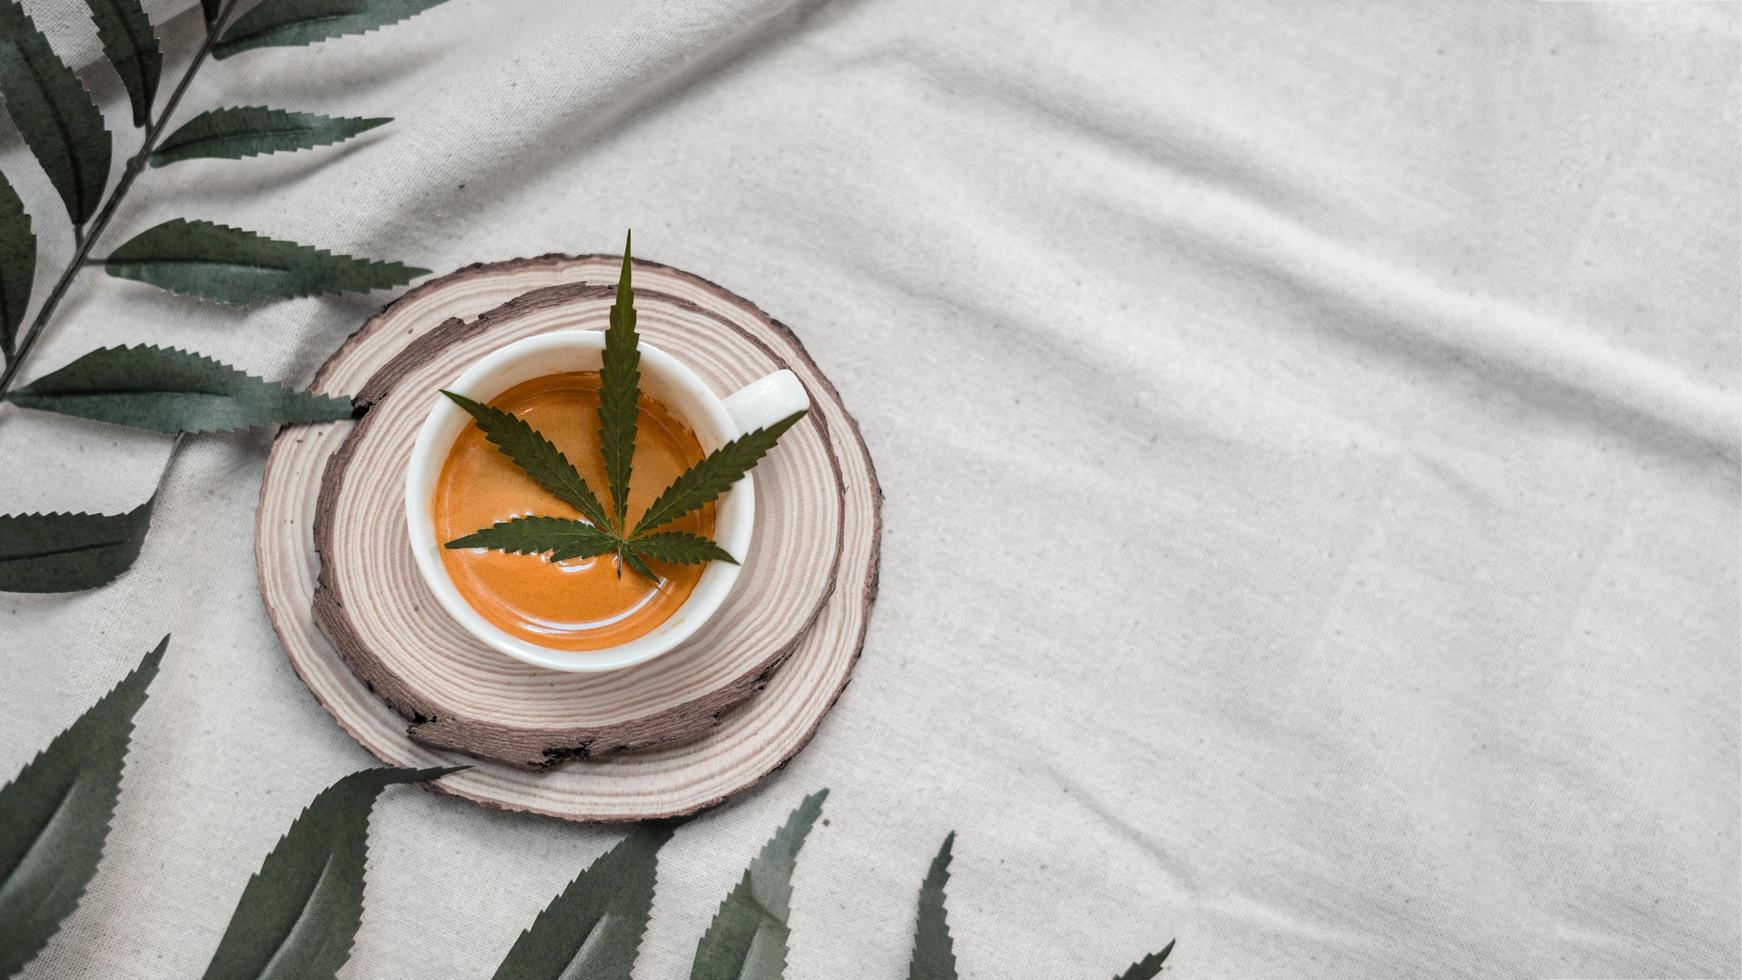 folha de cannabis em uma xícara de café em uma toalha de mesa branca foto